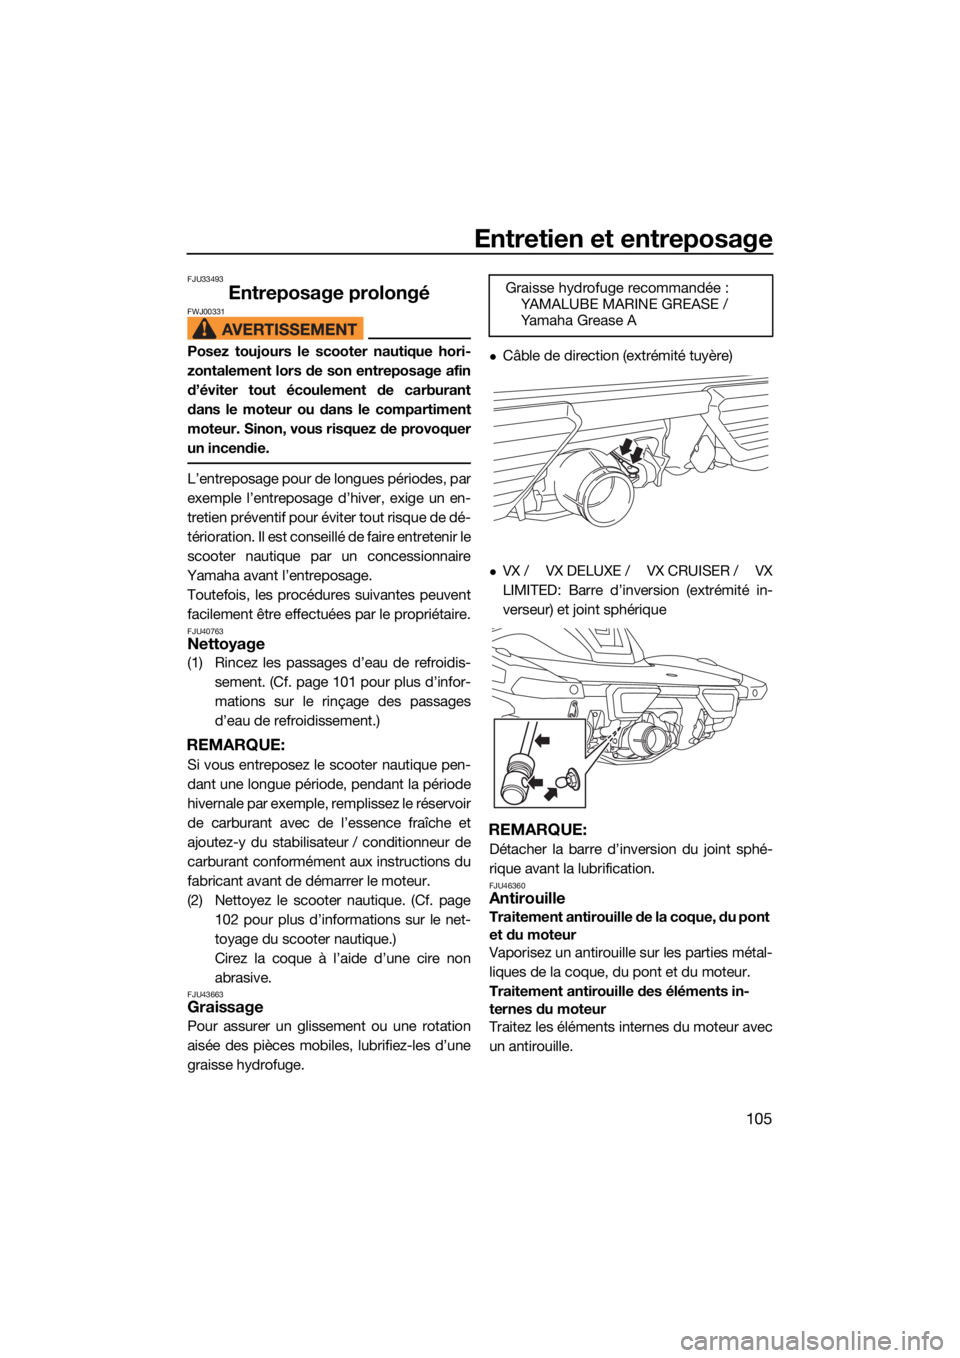 YAMAHA VX 2021  Notices Demploi (in French) Entretien et entreposage
105
FJU33493
Entreposage prolongéFWJ00331
Posez toujours le scooter nautique hori-
zontalement lors de son entreposage afin
d’éviter tout écoulement de carburant
dans le 